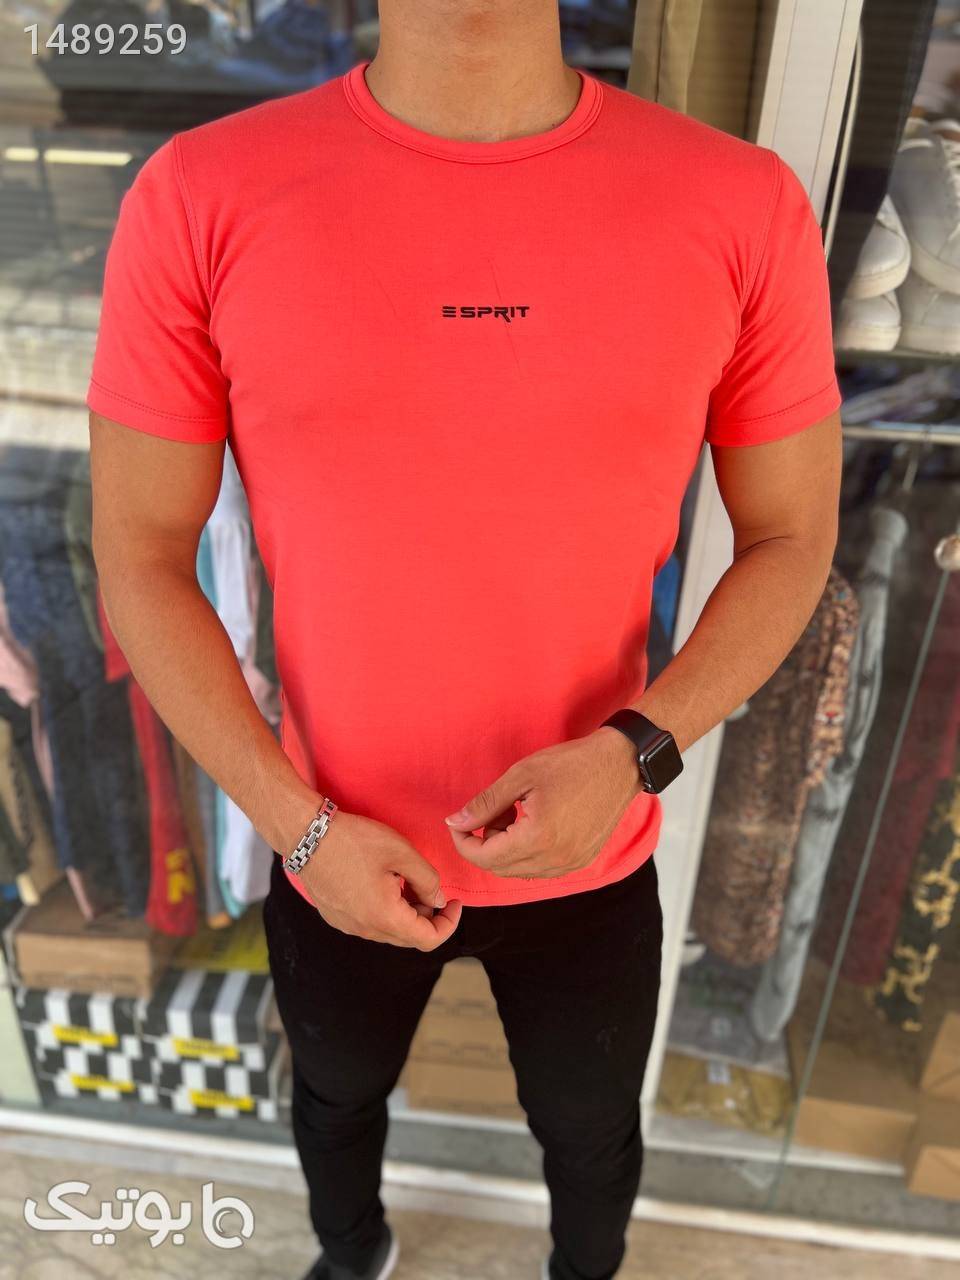 تیشرت مرجانی Esprit قرمز تی شرت و پولو شرت مردانه